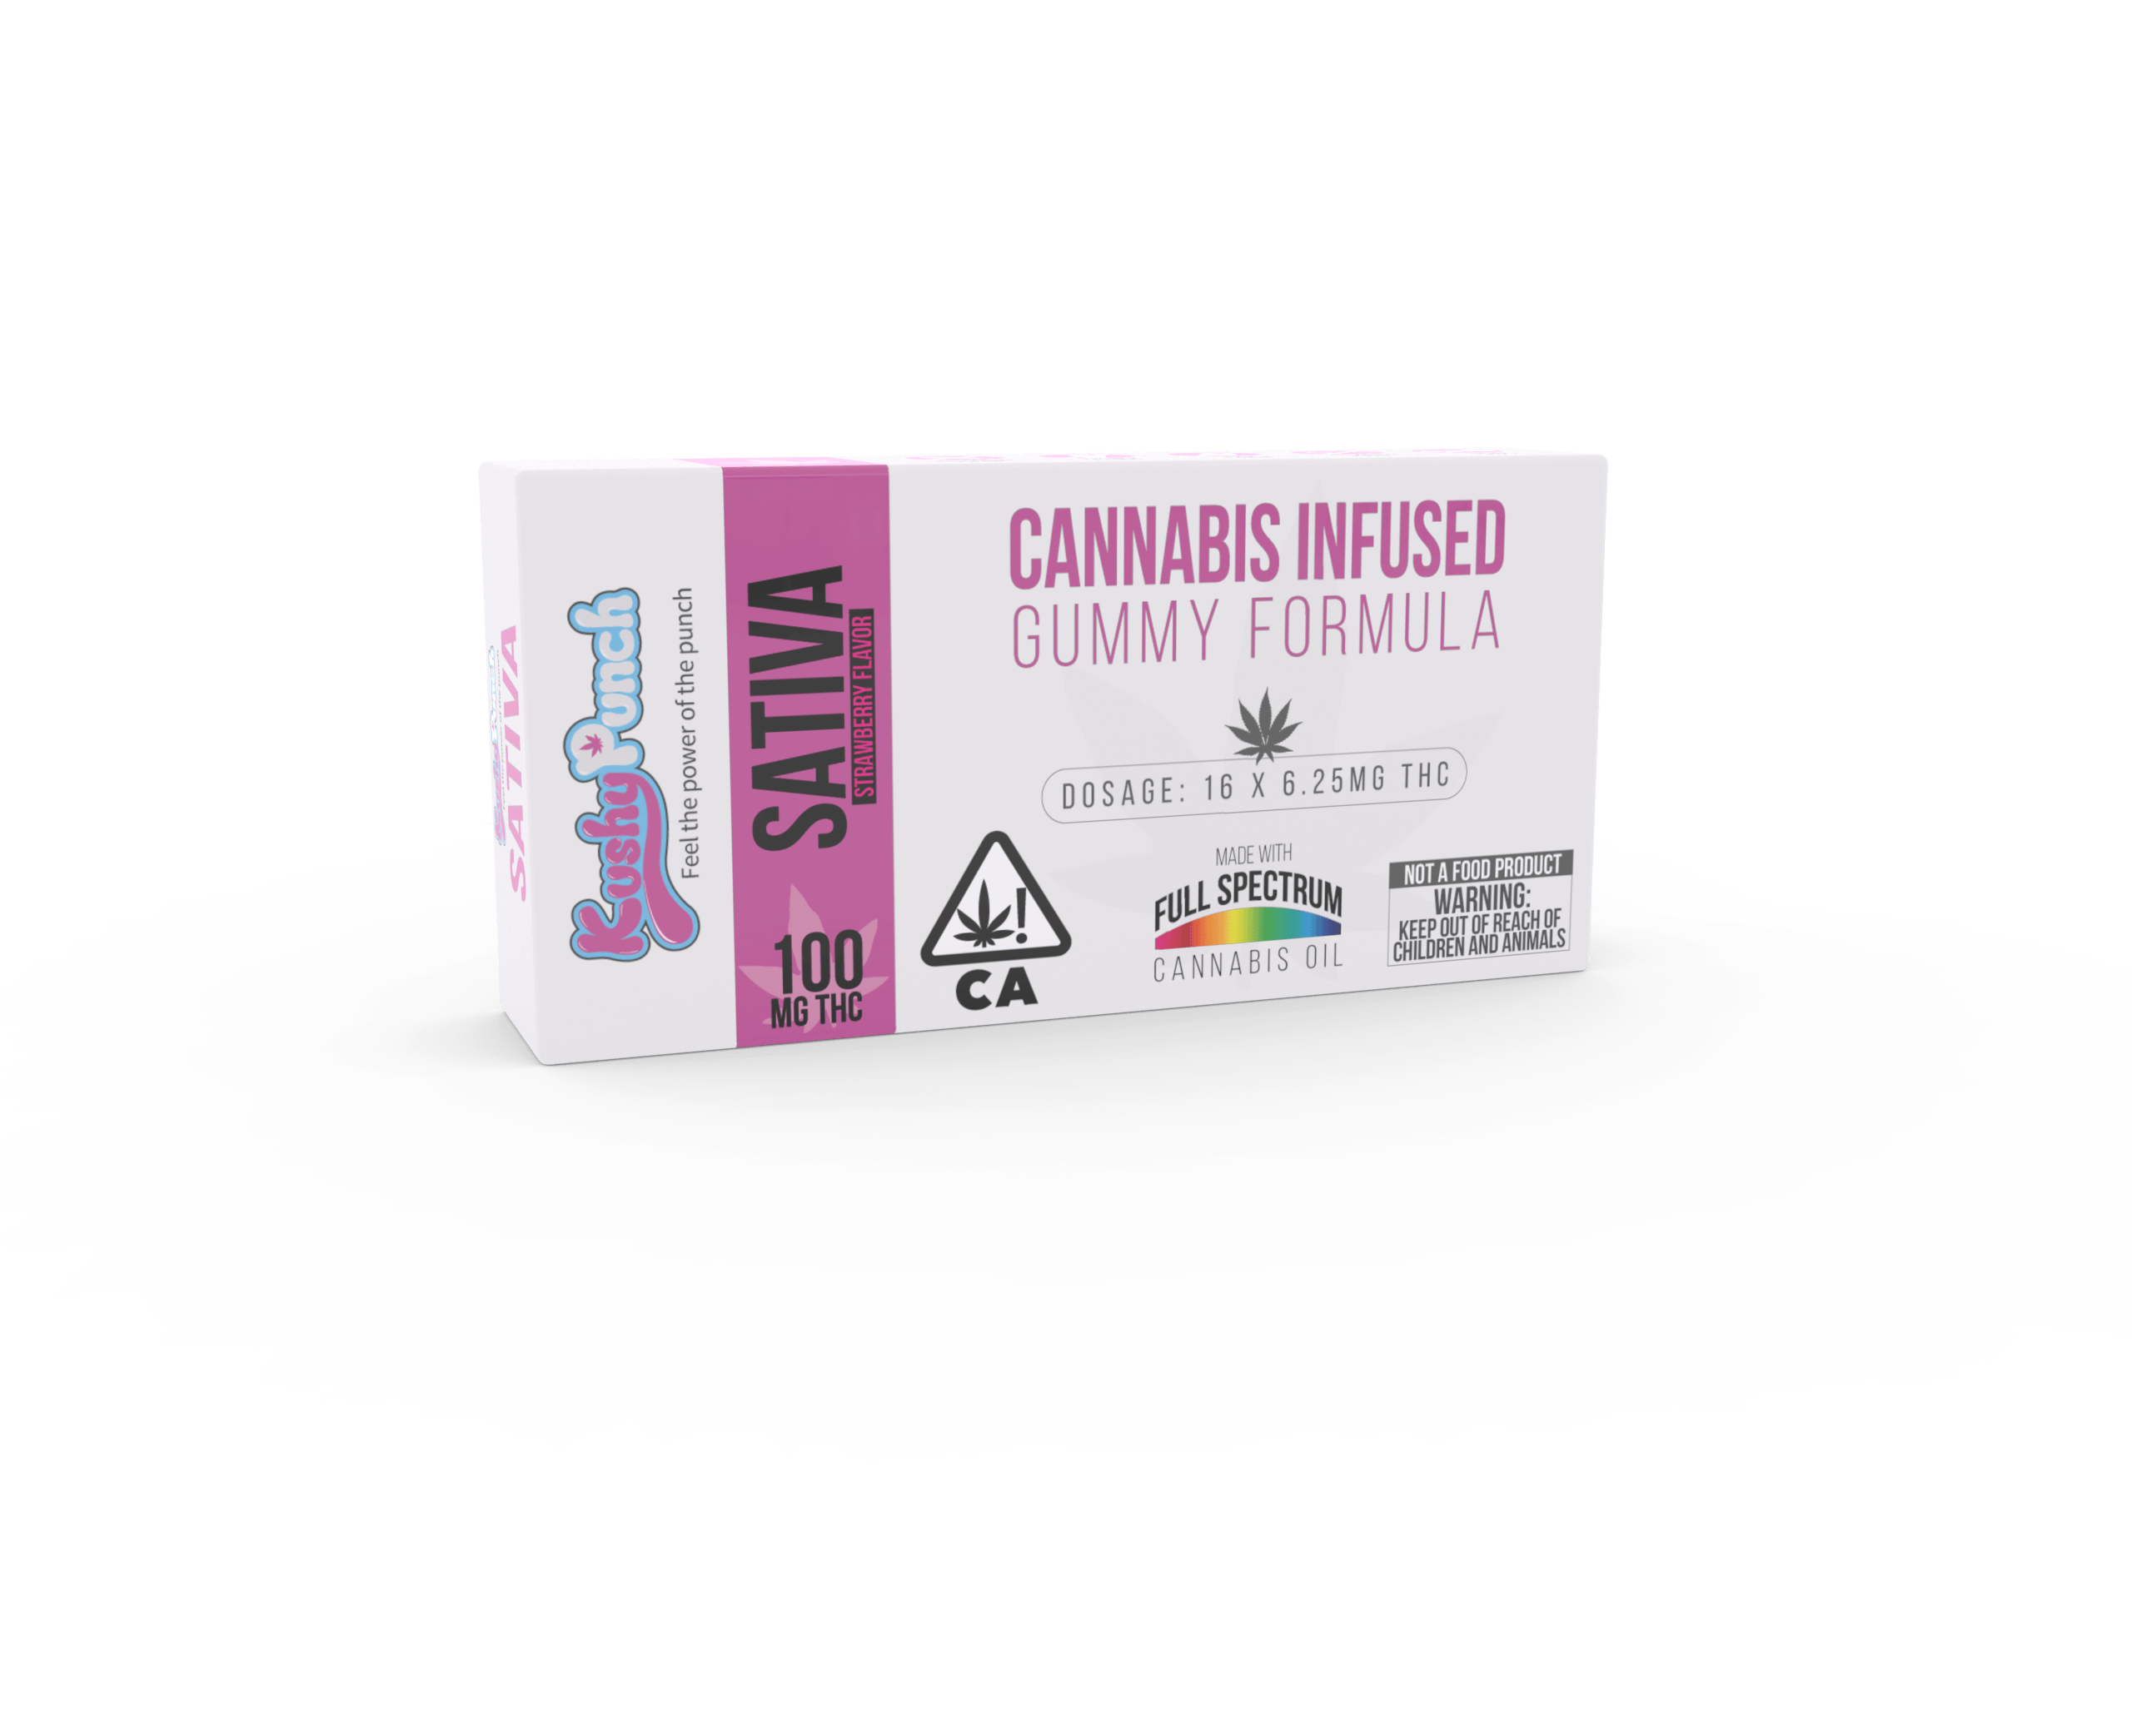 marijuana-dispensaries-dank-of-california-in-tarzana-kushy-punch-strawberry-flavor-sativa